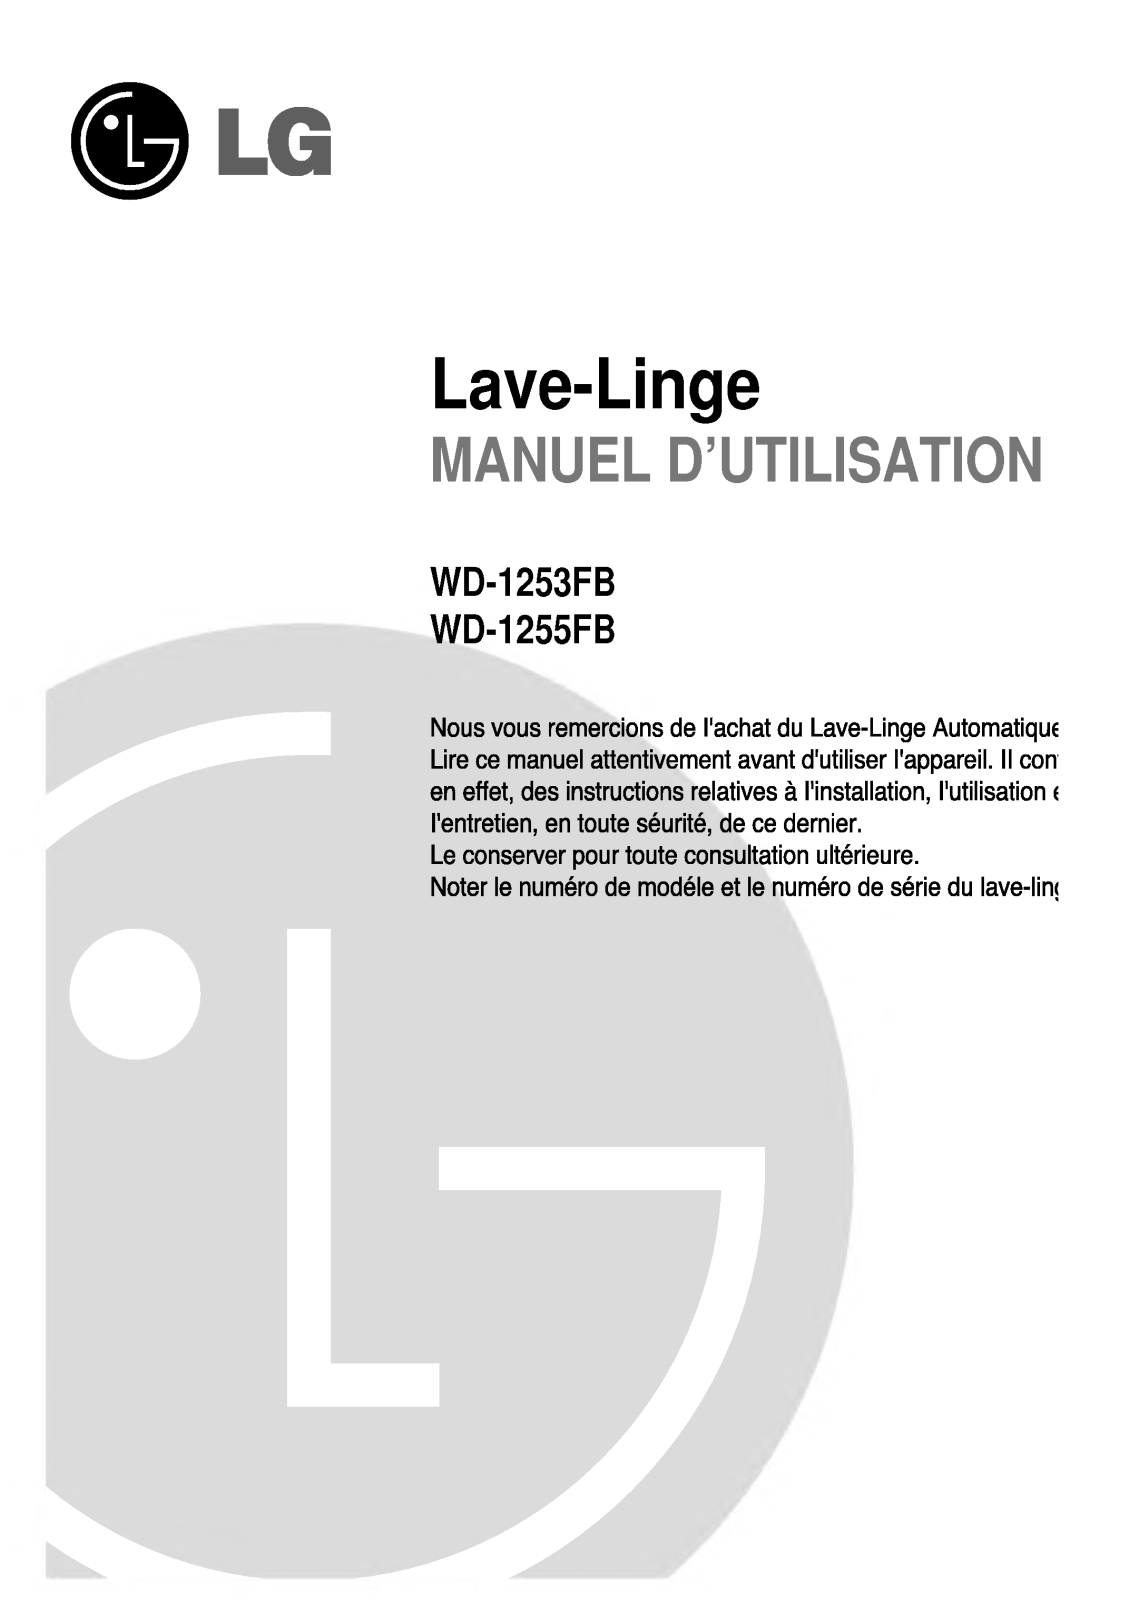 LG WD-1255FB User Manual